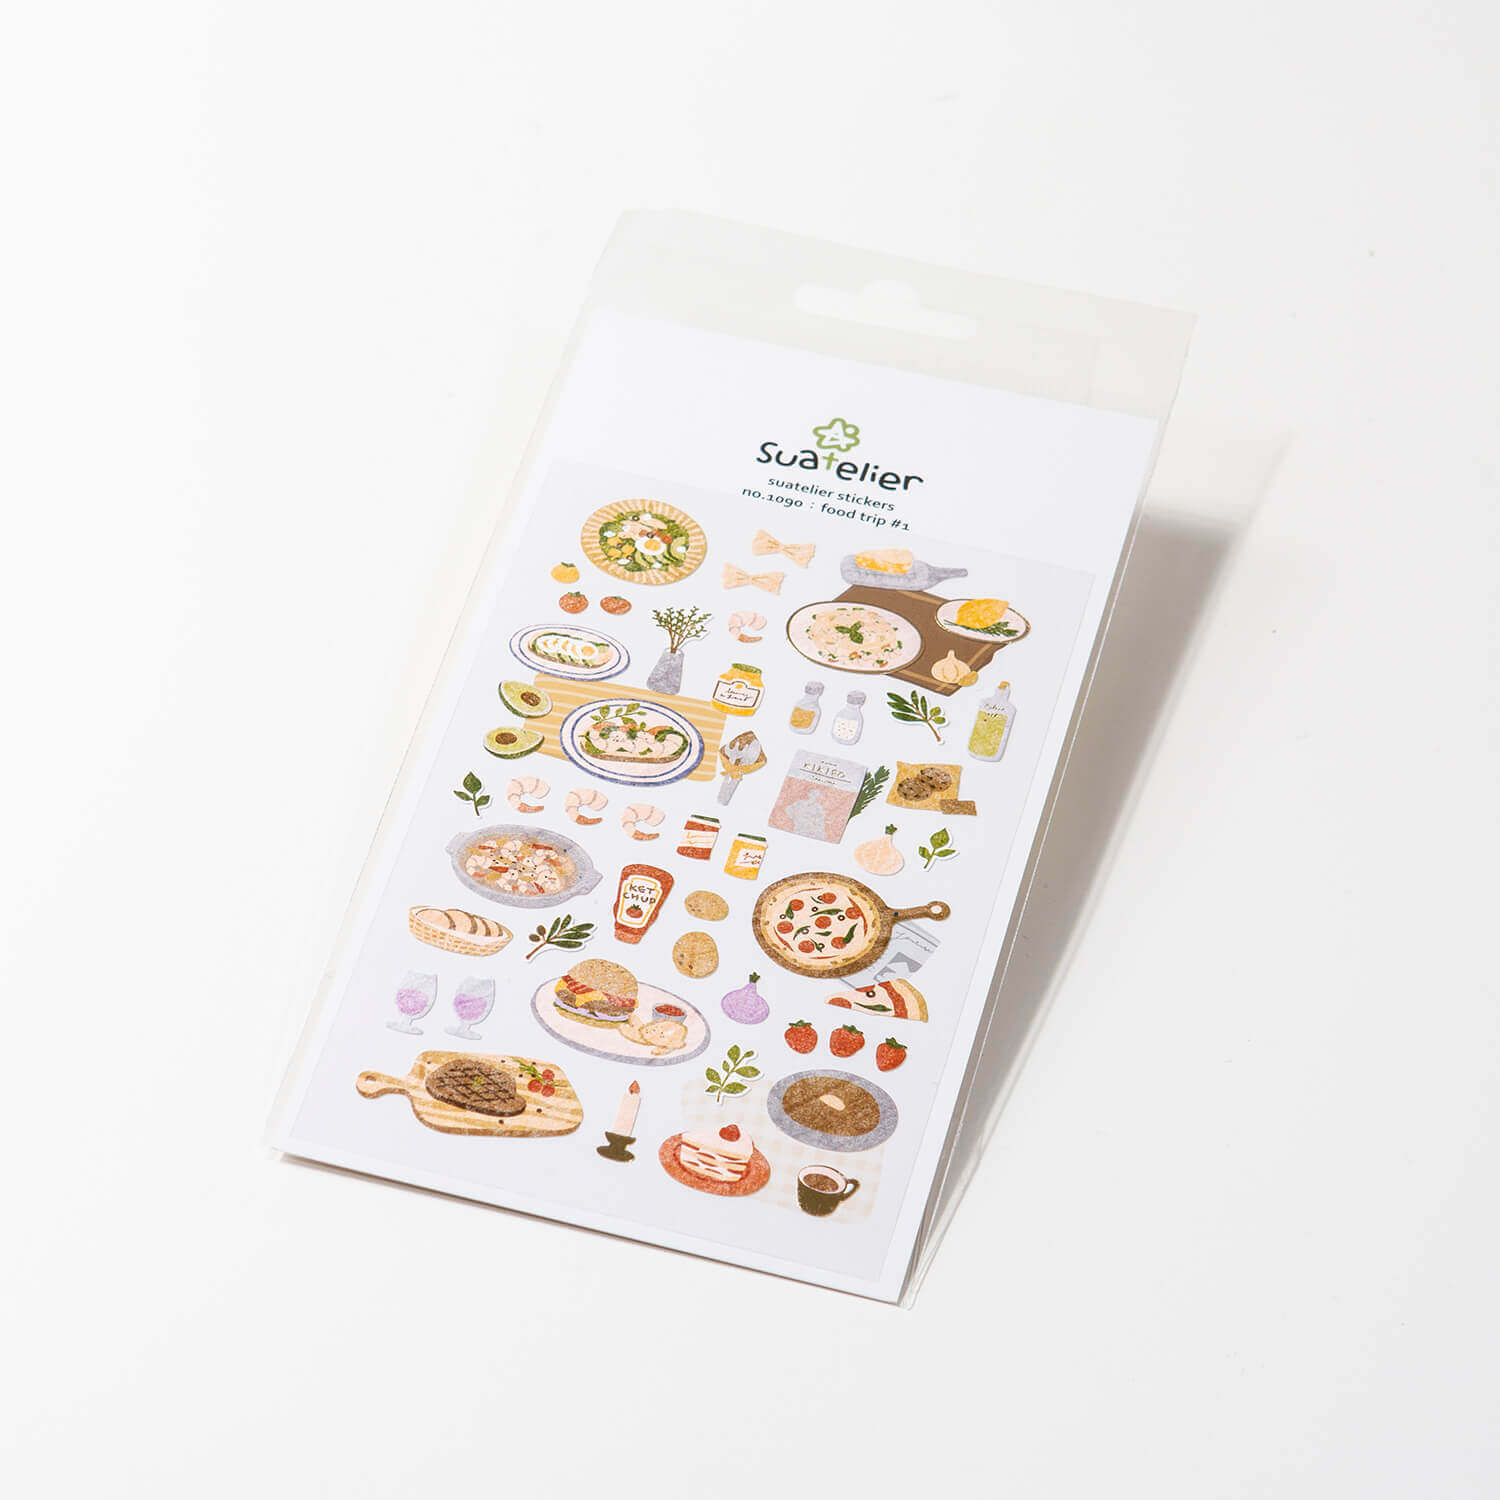 Sautelier Sticker: Food Trip #1